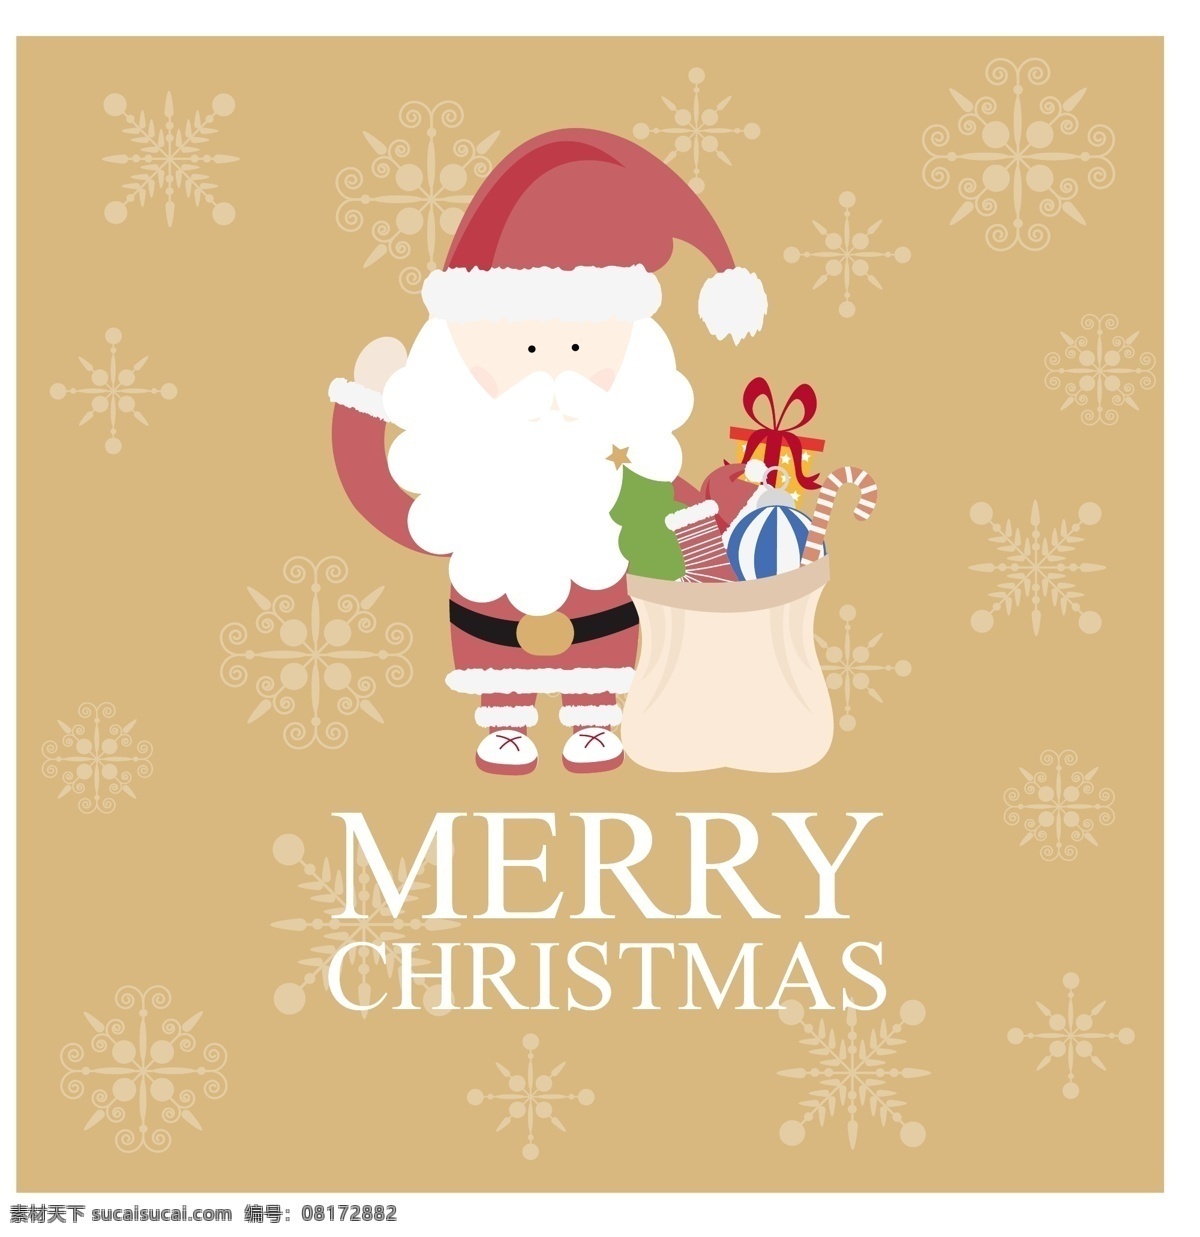 可爱 扁平化 圣诞老人 背 行囊 打招呼 卡通圣诞老人 礼物袋 圣诞彩球 圣诞节礼物 圣诞树 圣诞袜 雪花 节日素材